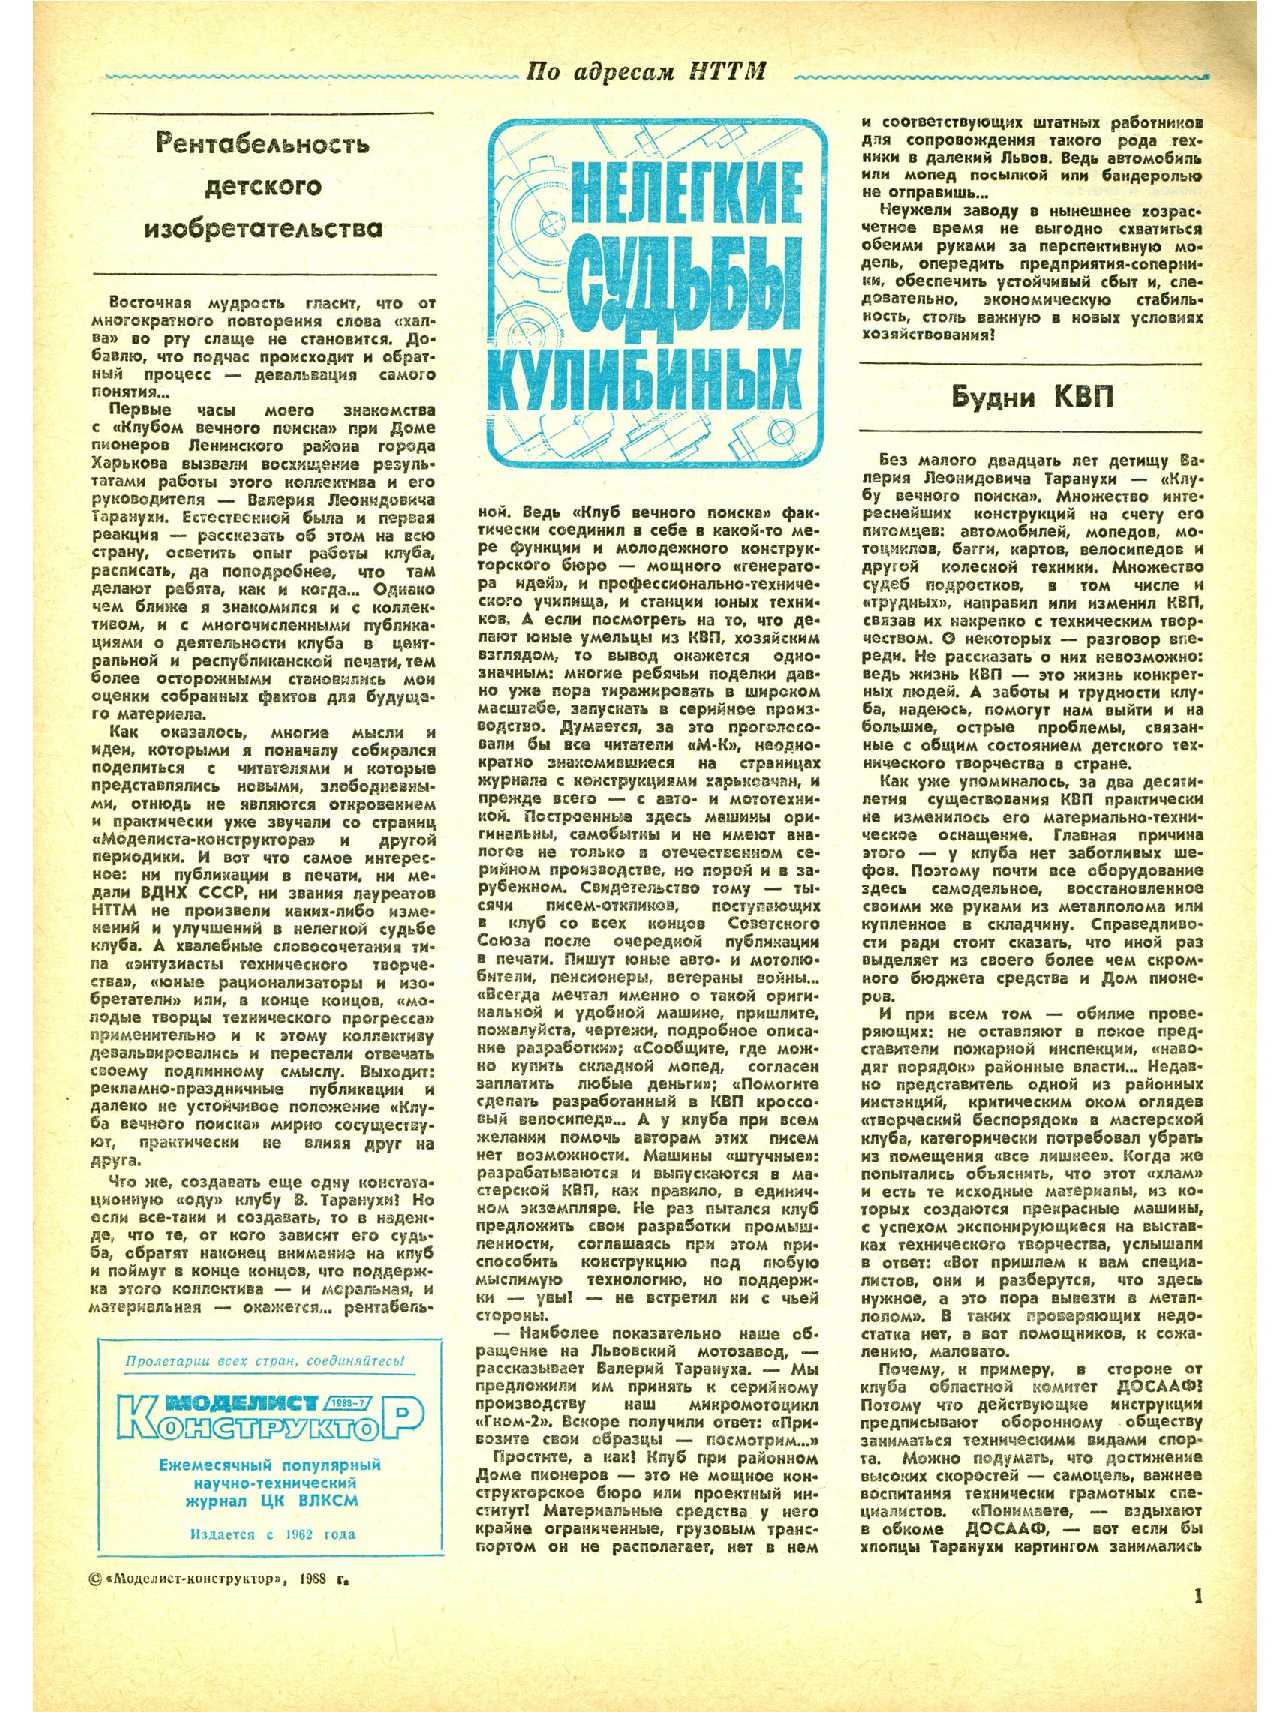 МК 7, 1988, 1 c.